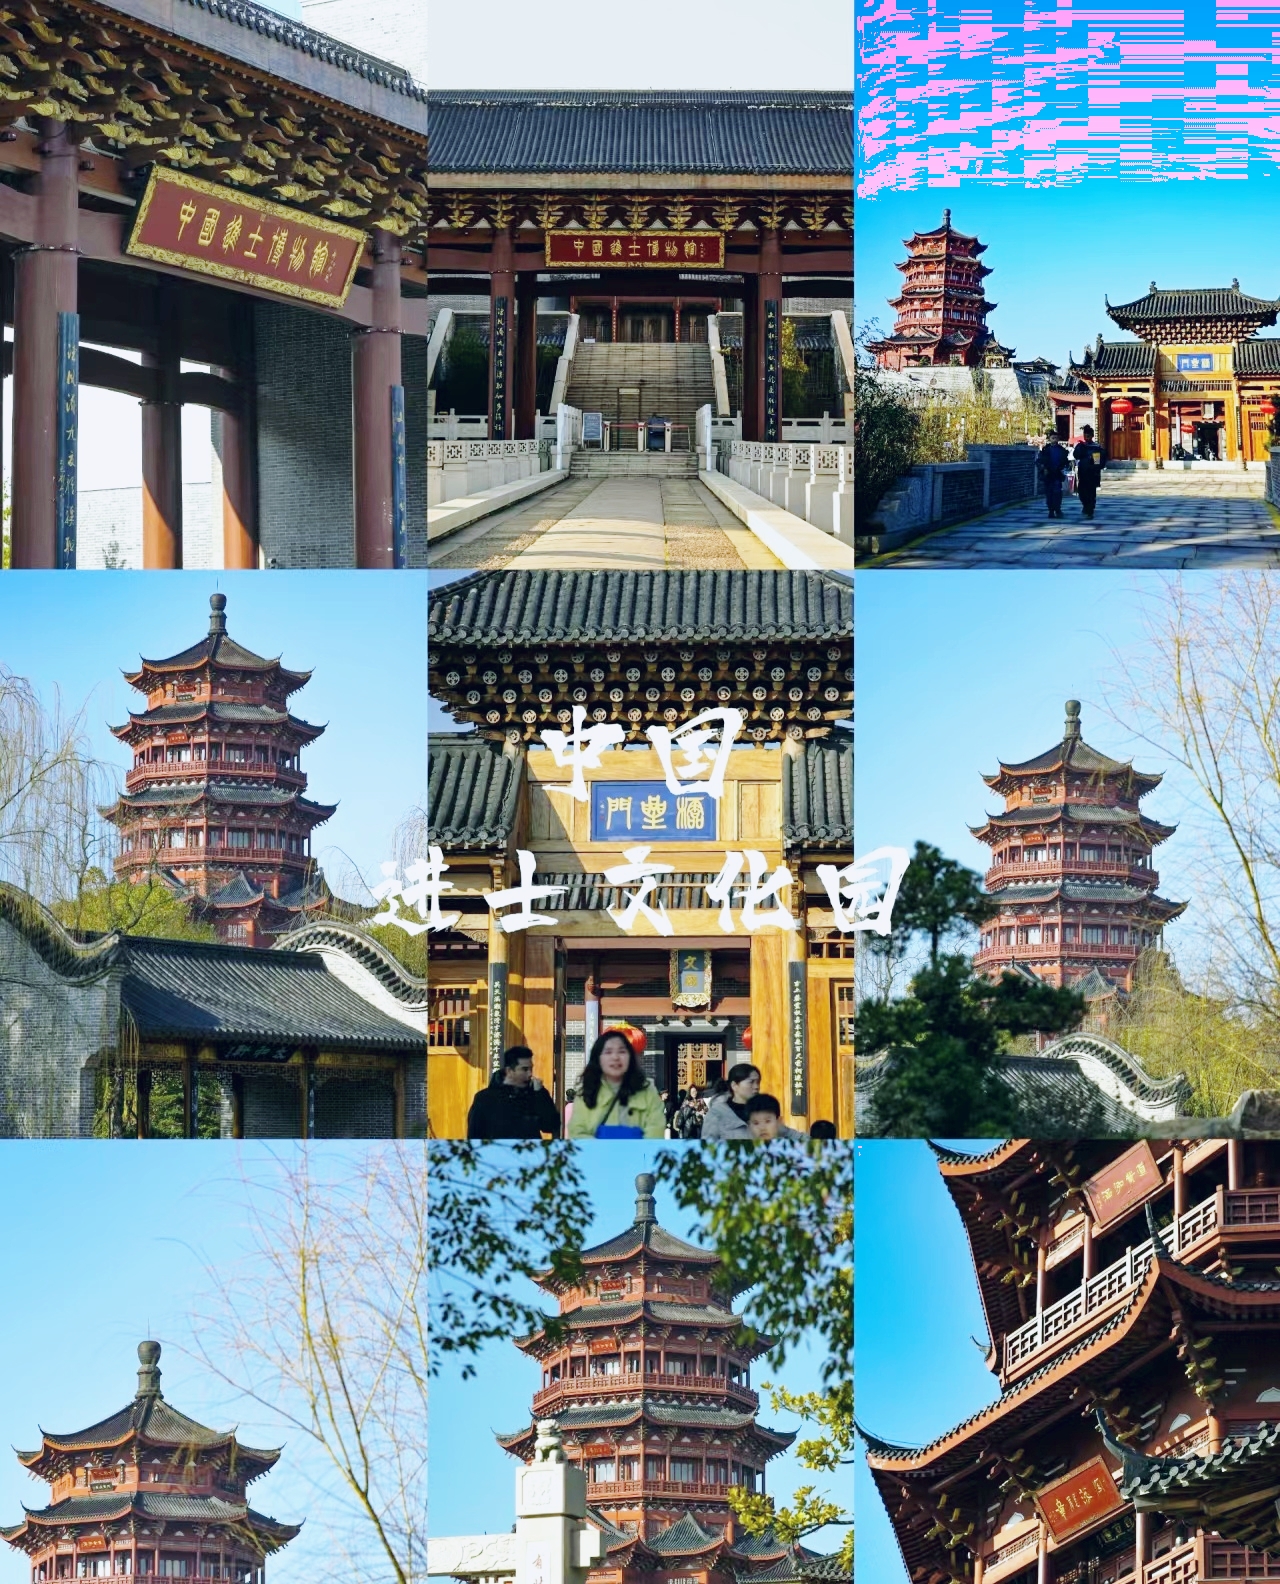 中国进士文化园